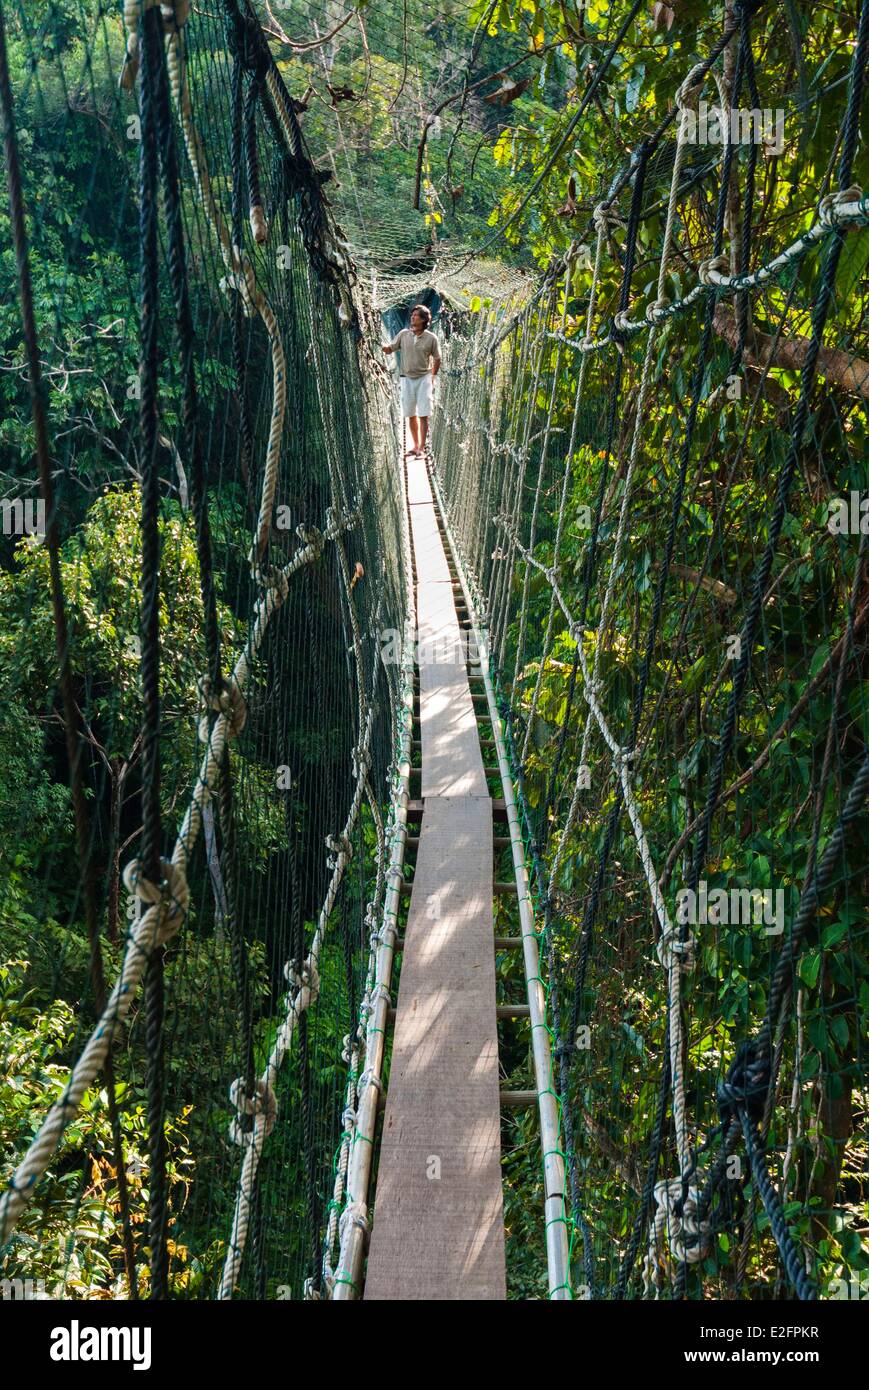 Malaysia Malaysian Borneo Sarawak State Batang Ai National Park Canopy